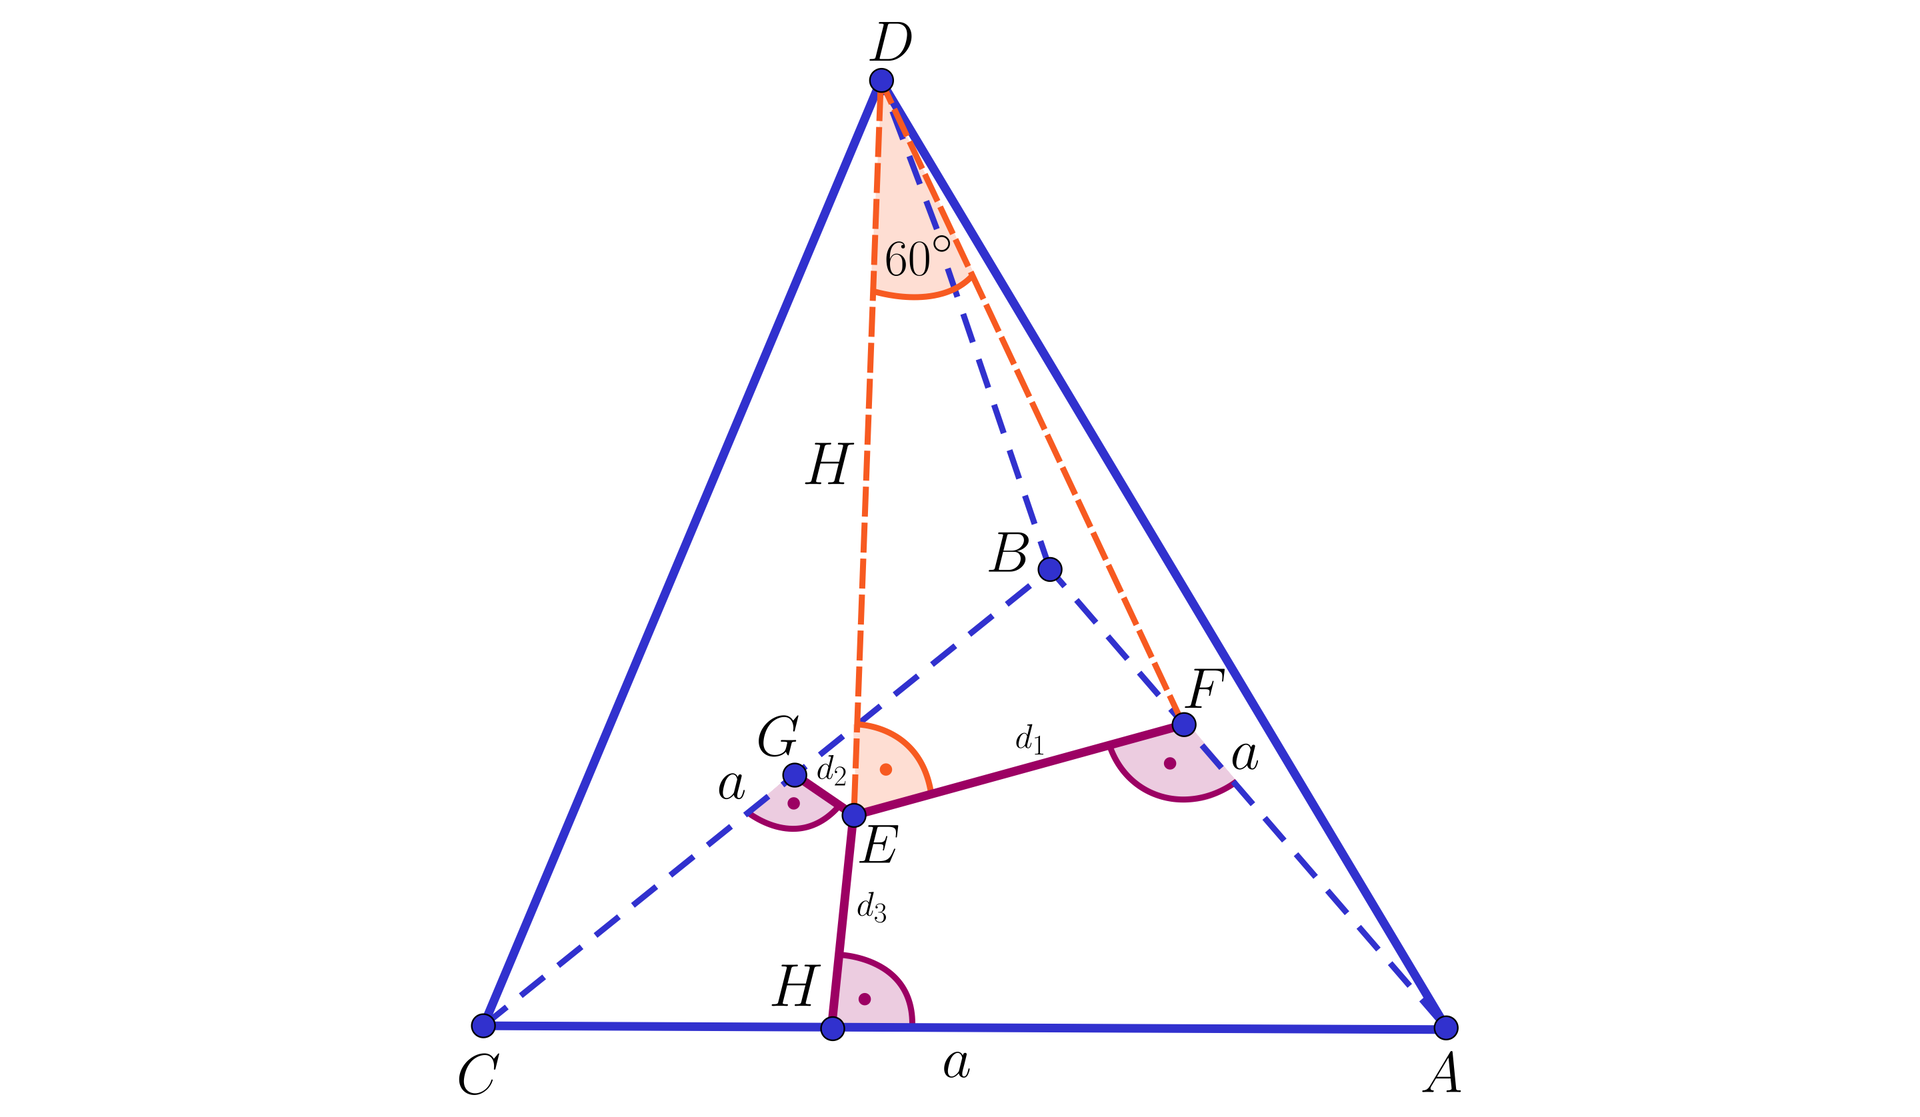 Ilustracja przedstawia czworościan o wierzchołkach A B C D , w którym krawędzie AB, BC oraz AC mają długość a. Wysokość opuszczono z wierzchołka D na ścianę A B C, jej długość wynosi H, a spodek wysokości podpisano literą E. Z wierzchołka D na krawędź AB również opuszczono wysokość, jej spodek podpisano literą F. Kąt FDE ma 60 stopni. Z punktu F poprowadzono odcinki pod kątem prostym do krawędzi w następujący sposób: na krawędzi AB dop punktu F, na krawędzi BC do punktu G, na krawędzi AC do punktu H. Odcinek EF podpisano d1. Odcinek EG podpisano d2. Odcinek EH podpisano d3.